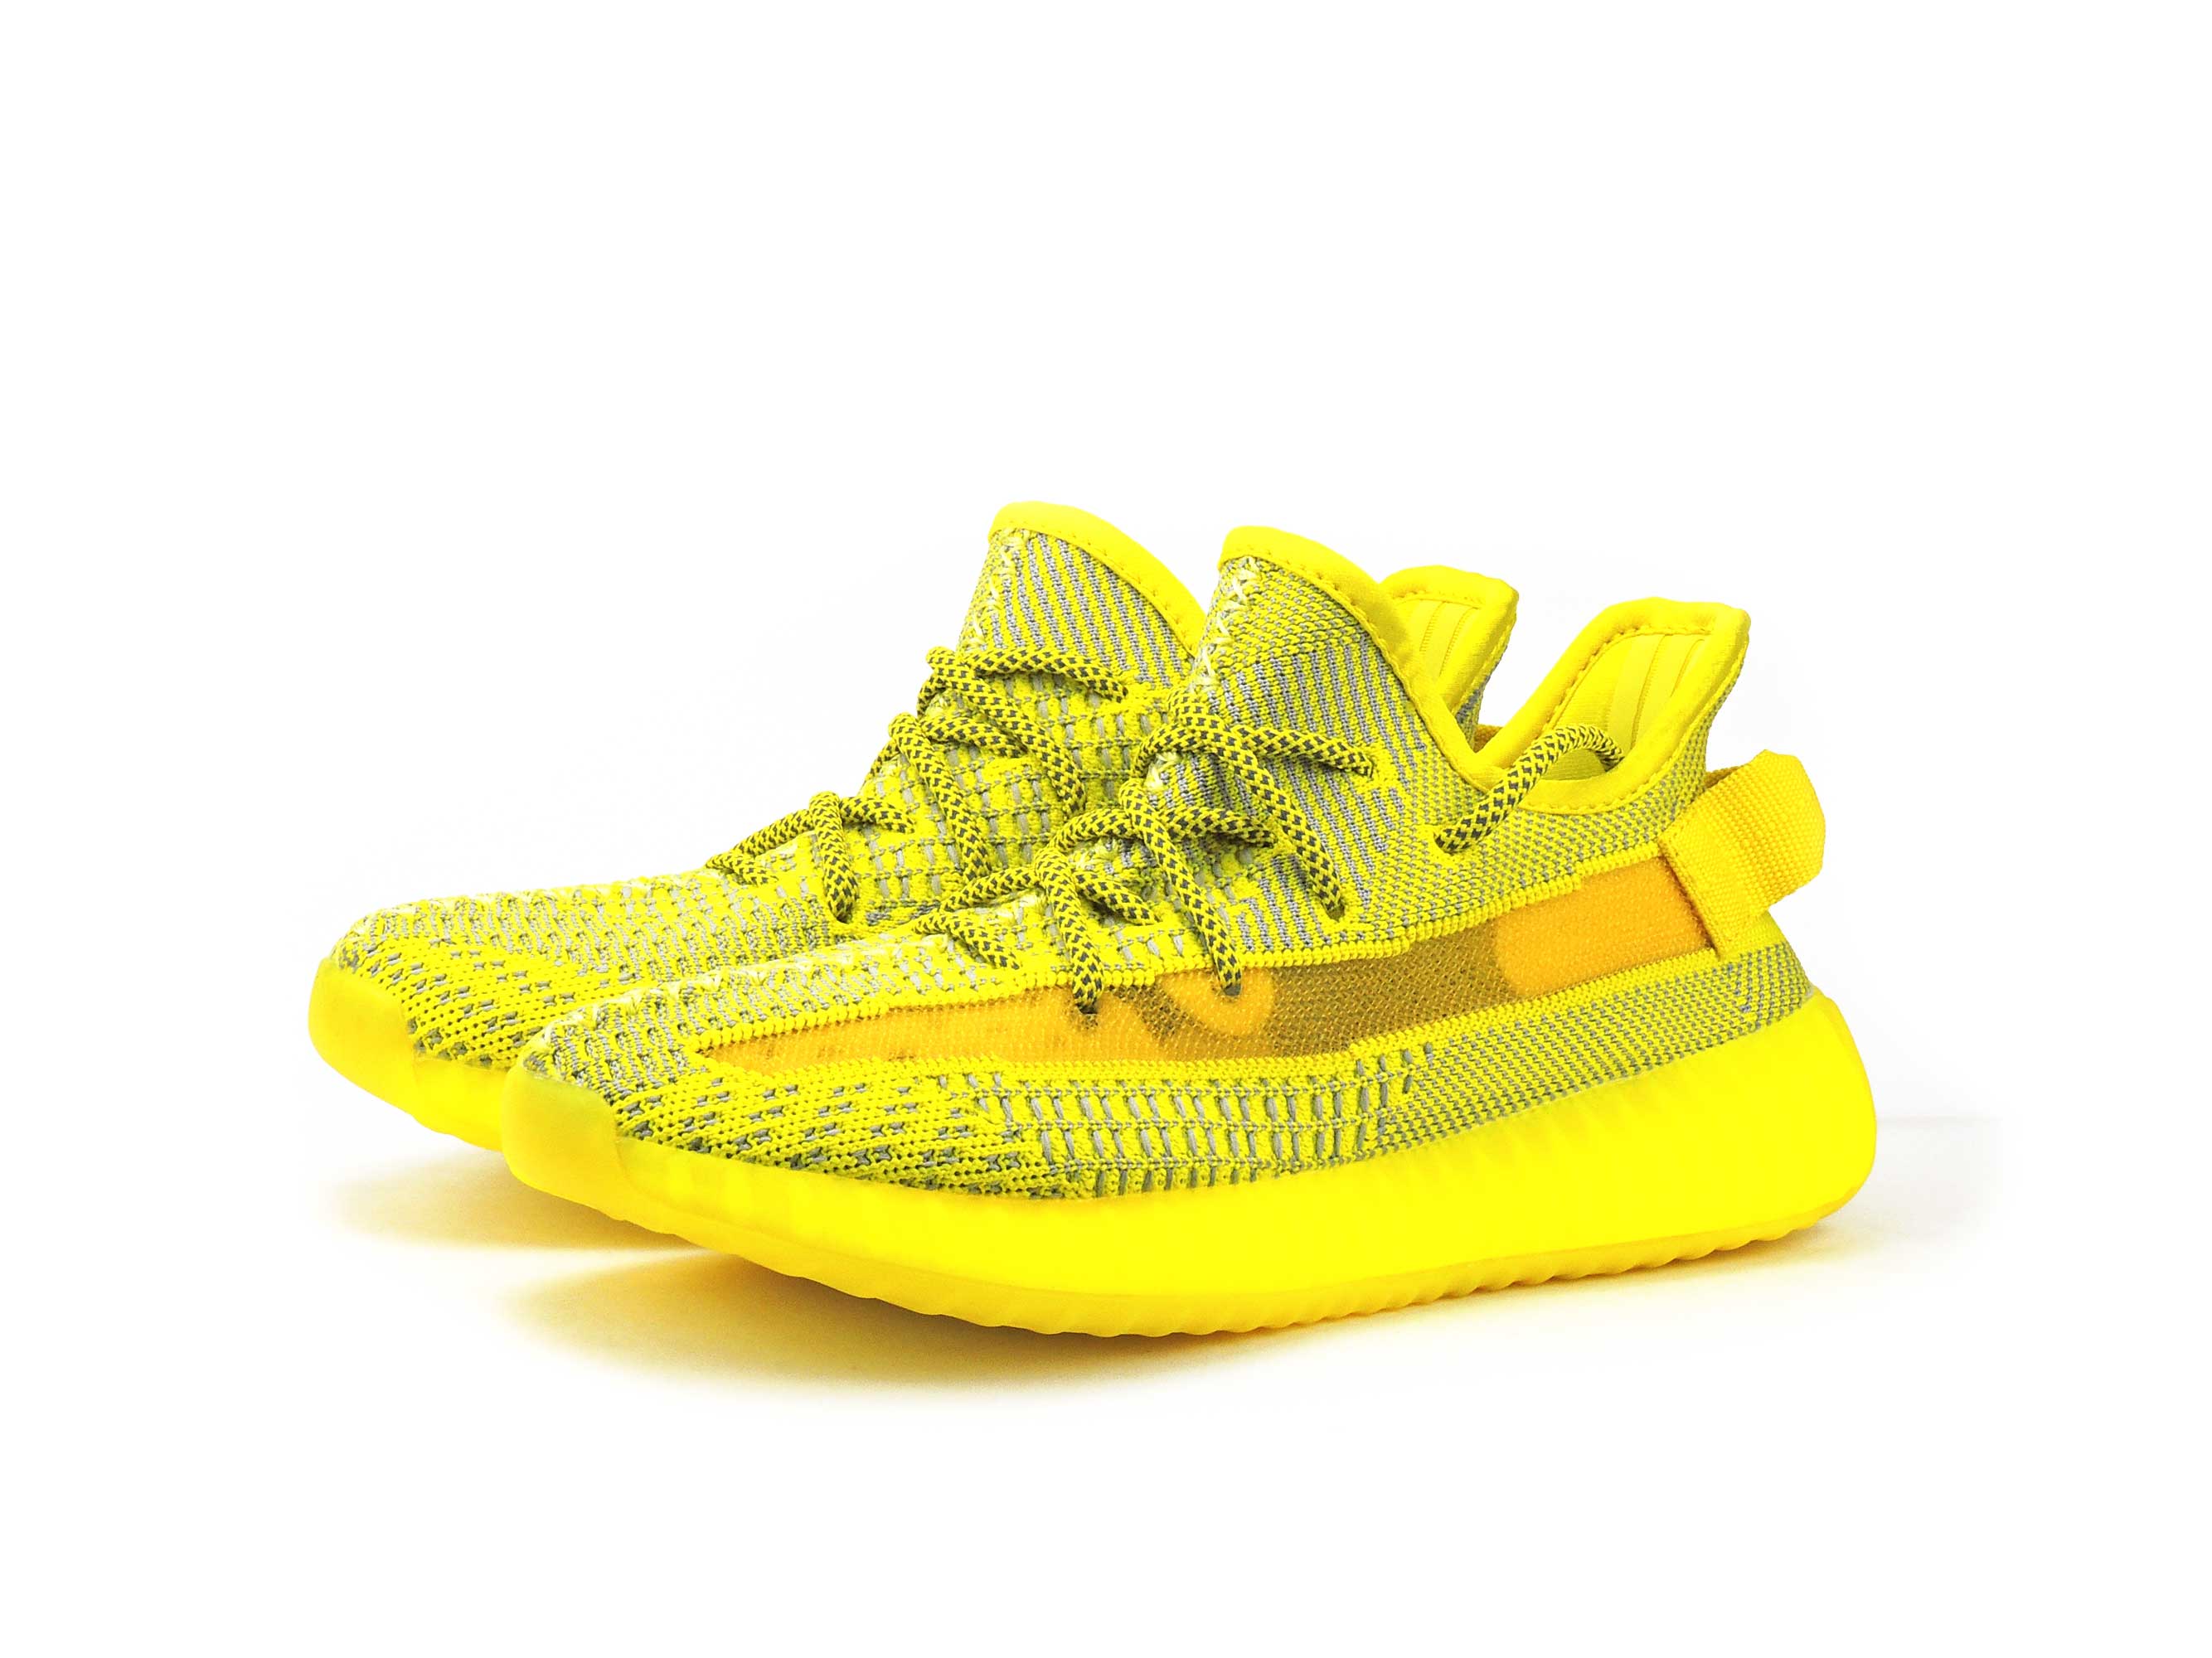 adidas yeezy boost 350 yellow